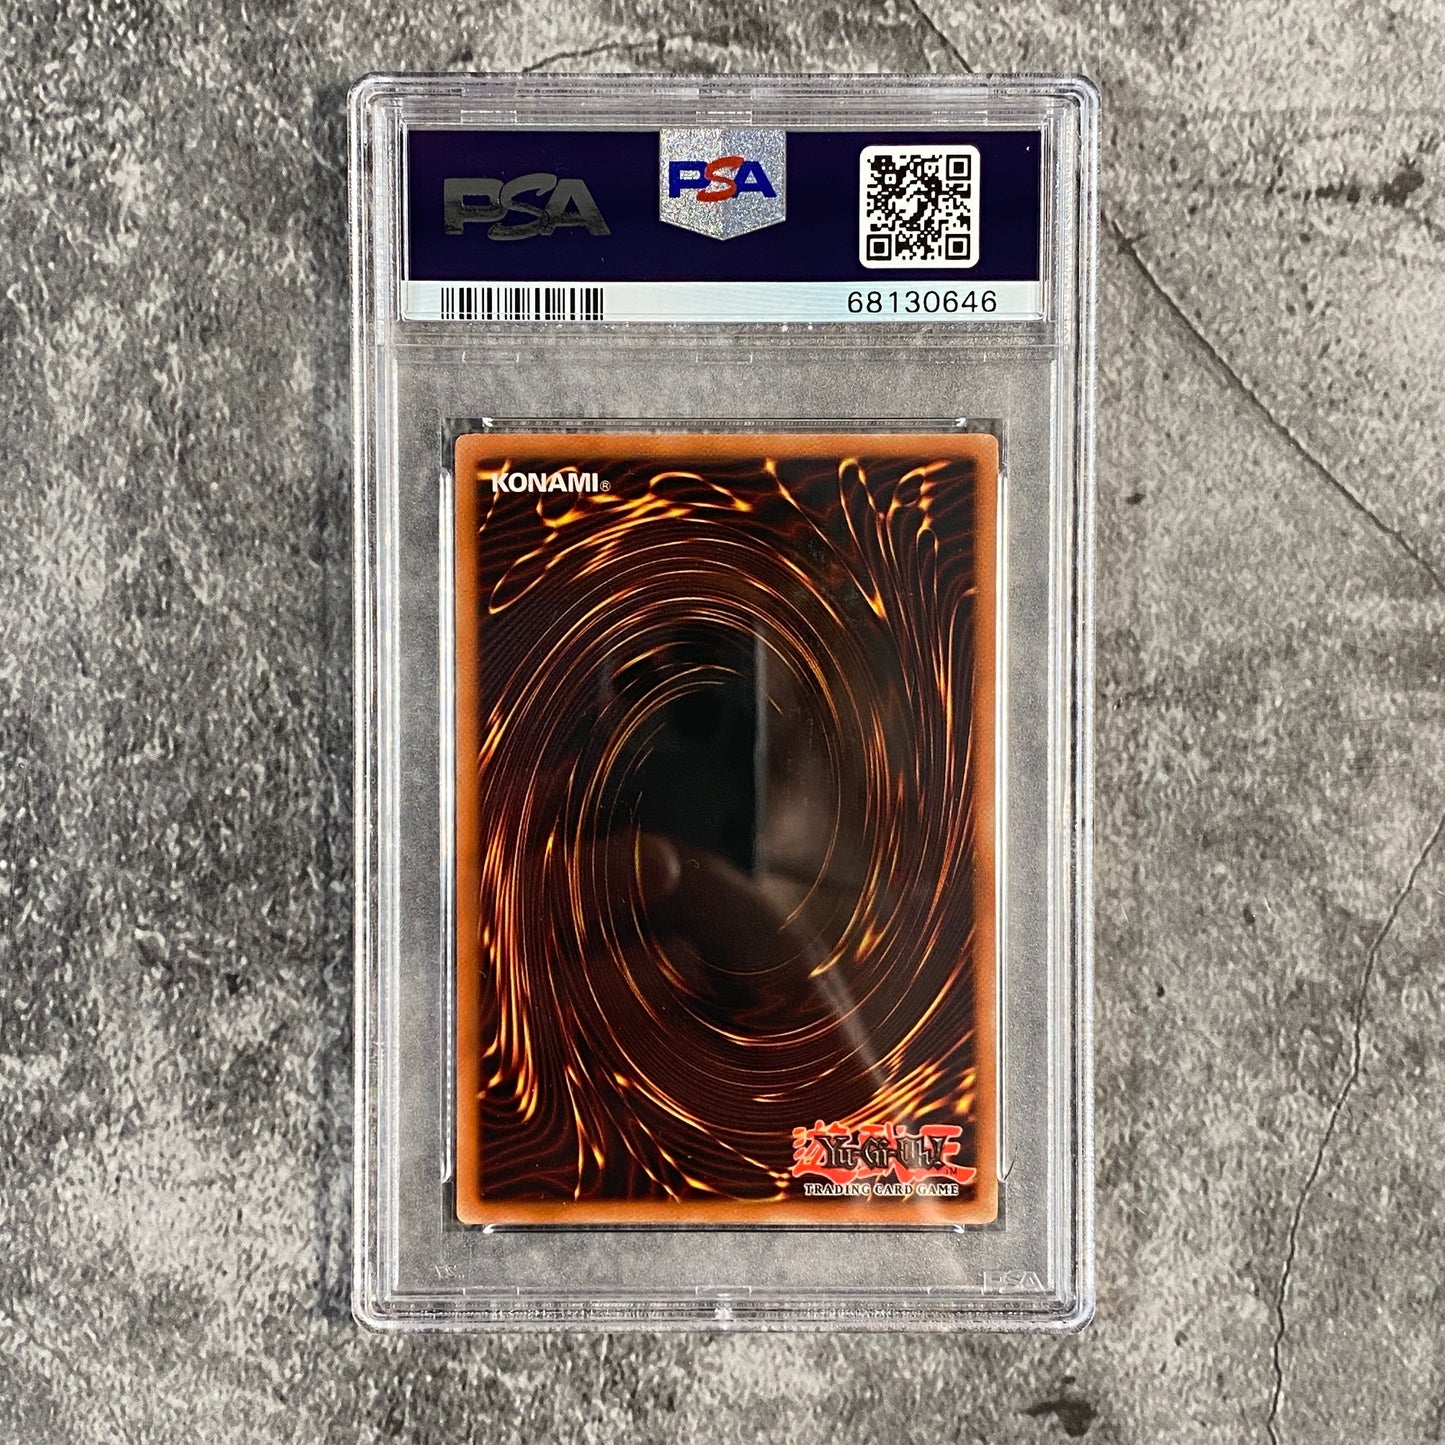 Mavin  Horus The Black Flame Dragon LV8 Ultimate Rare 1st Ed. PSA 8 NM -  MT POP 4!